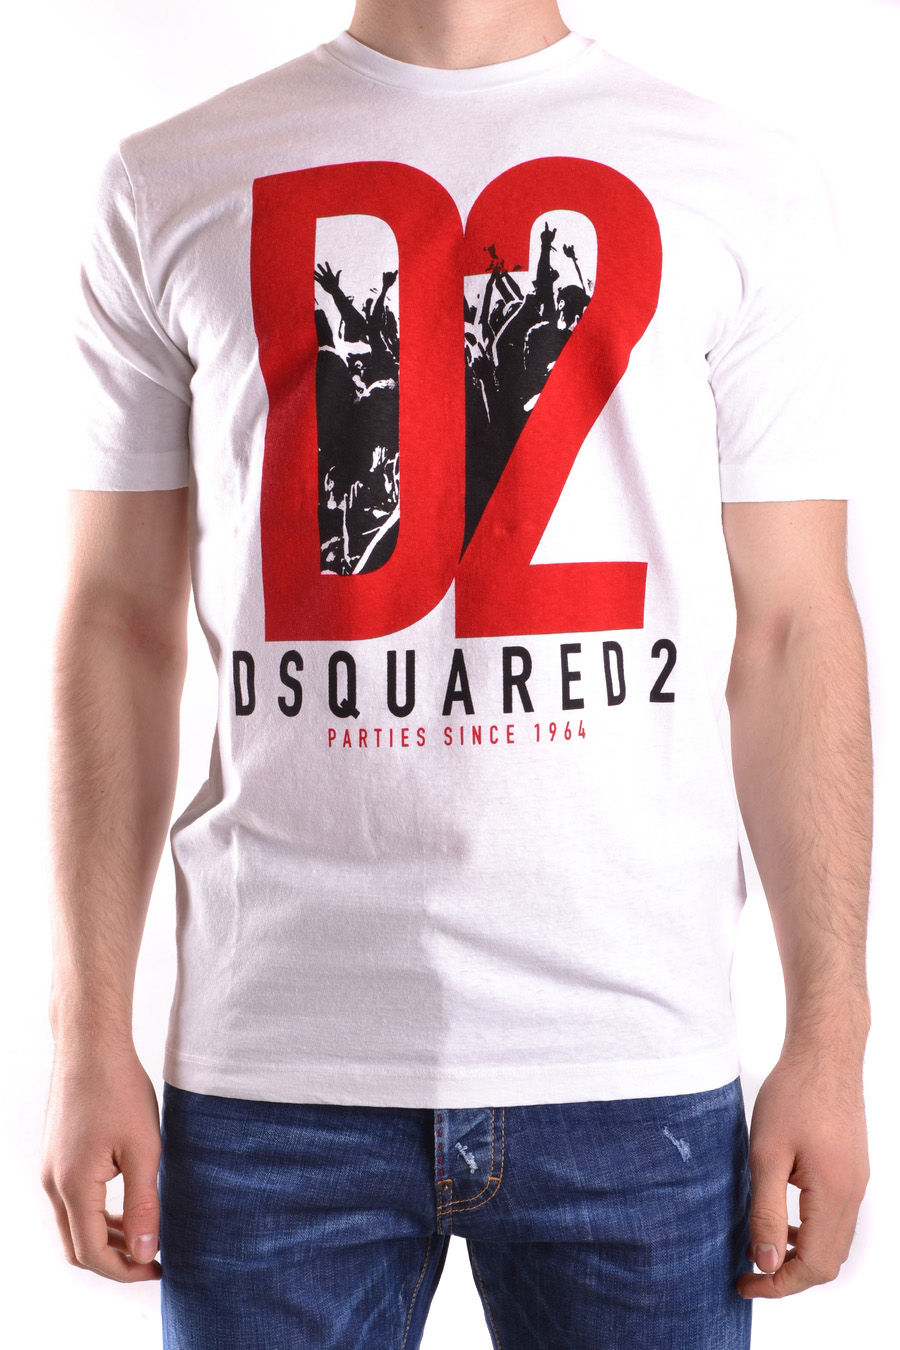 DSQUARED2 T-shirts | ViganoBoutique.com